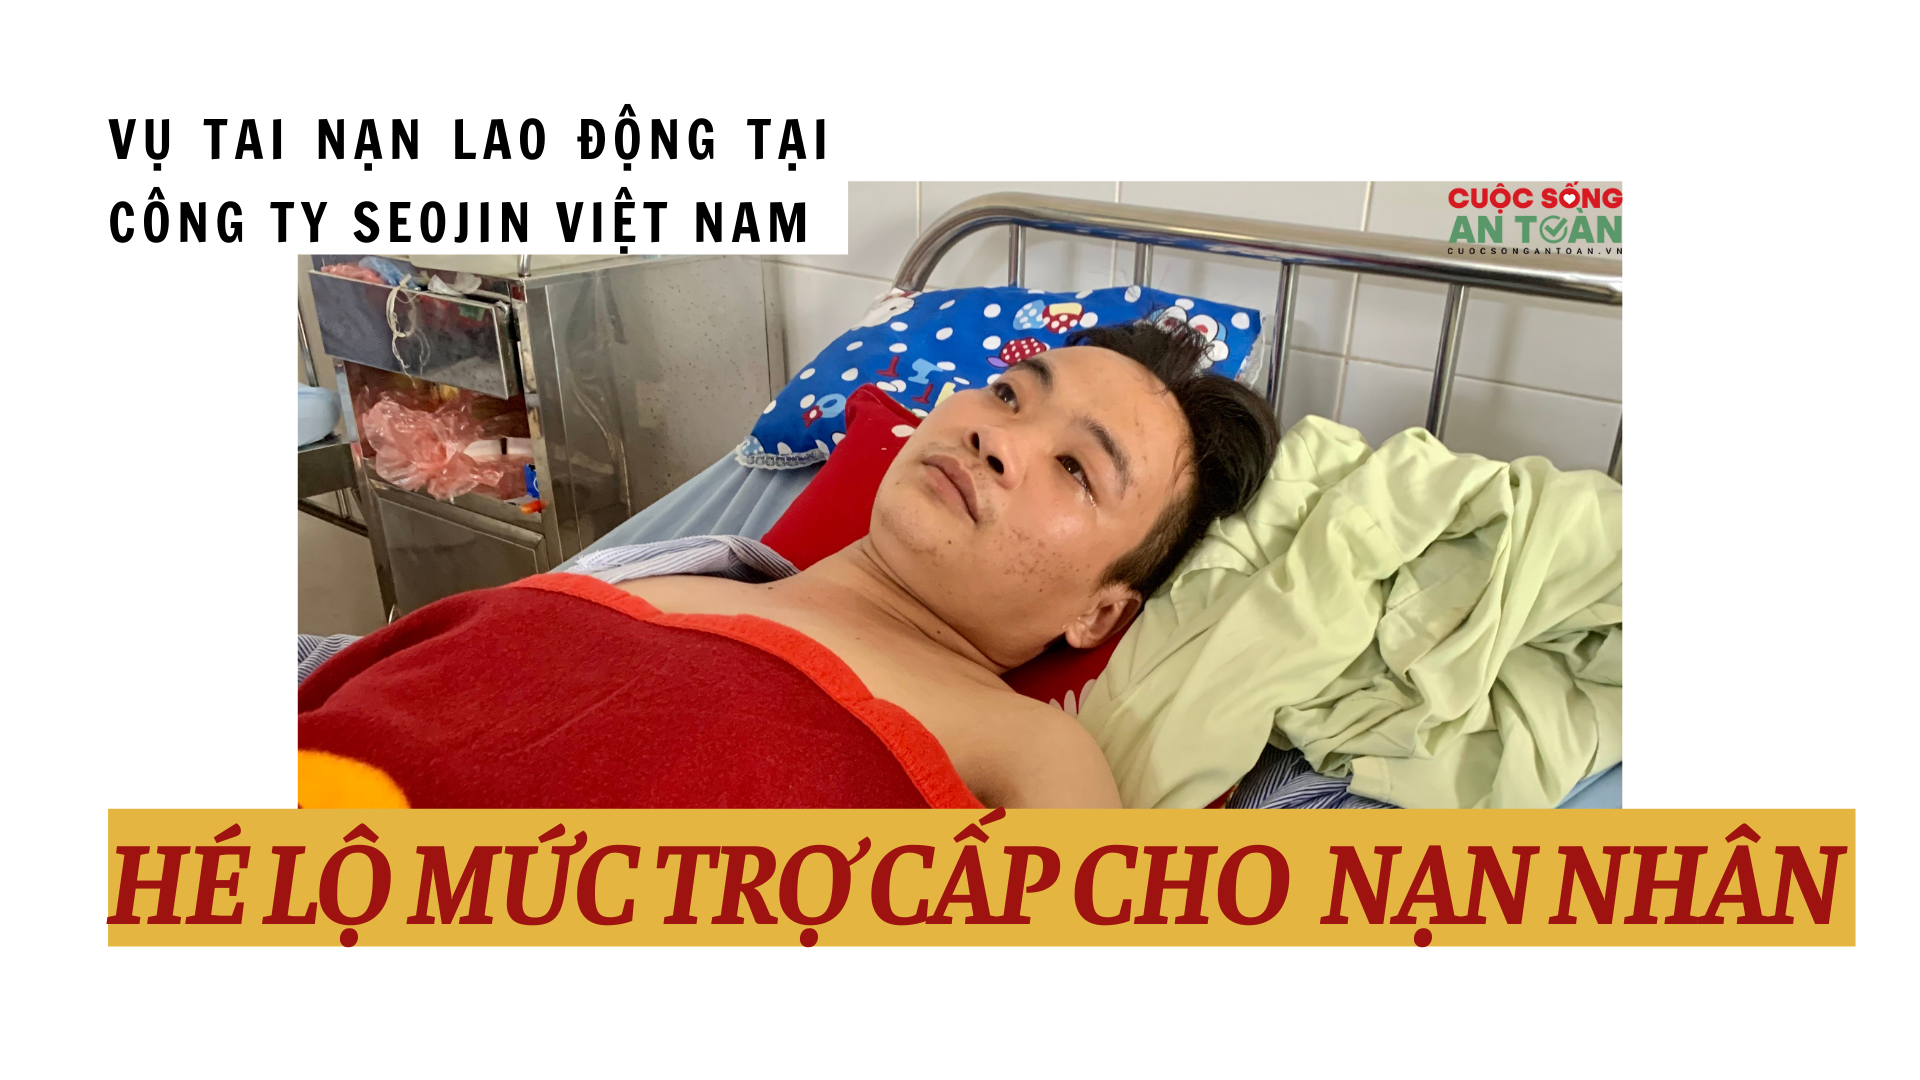 Tai nạn lao động ở Công ty TNHH Seojin Việt Nam: Công đoàn biết tin từ ... mạng xã hội